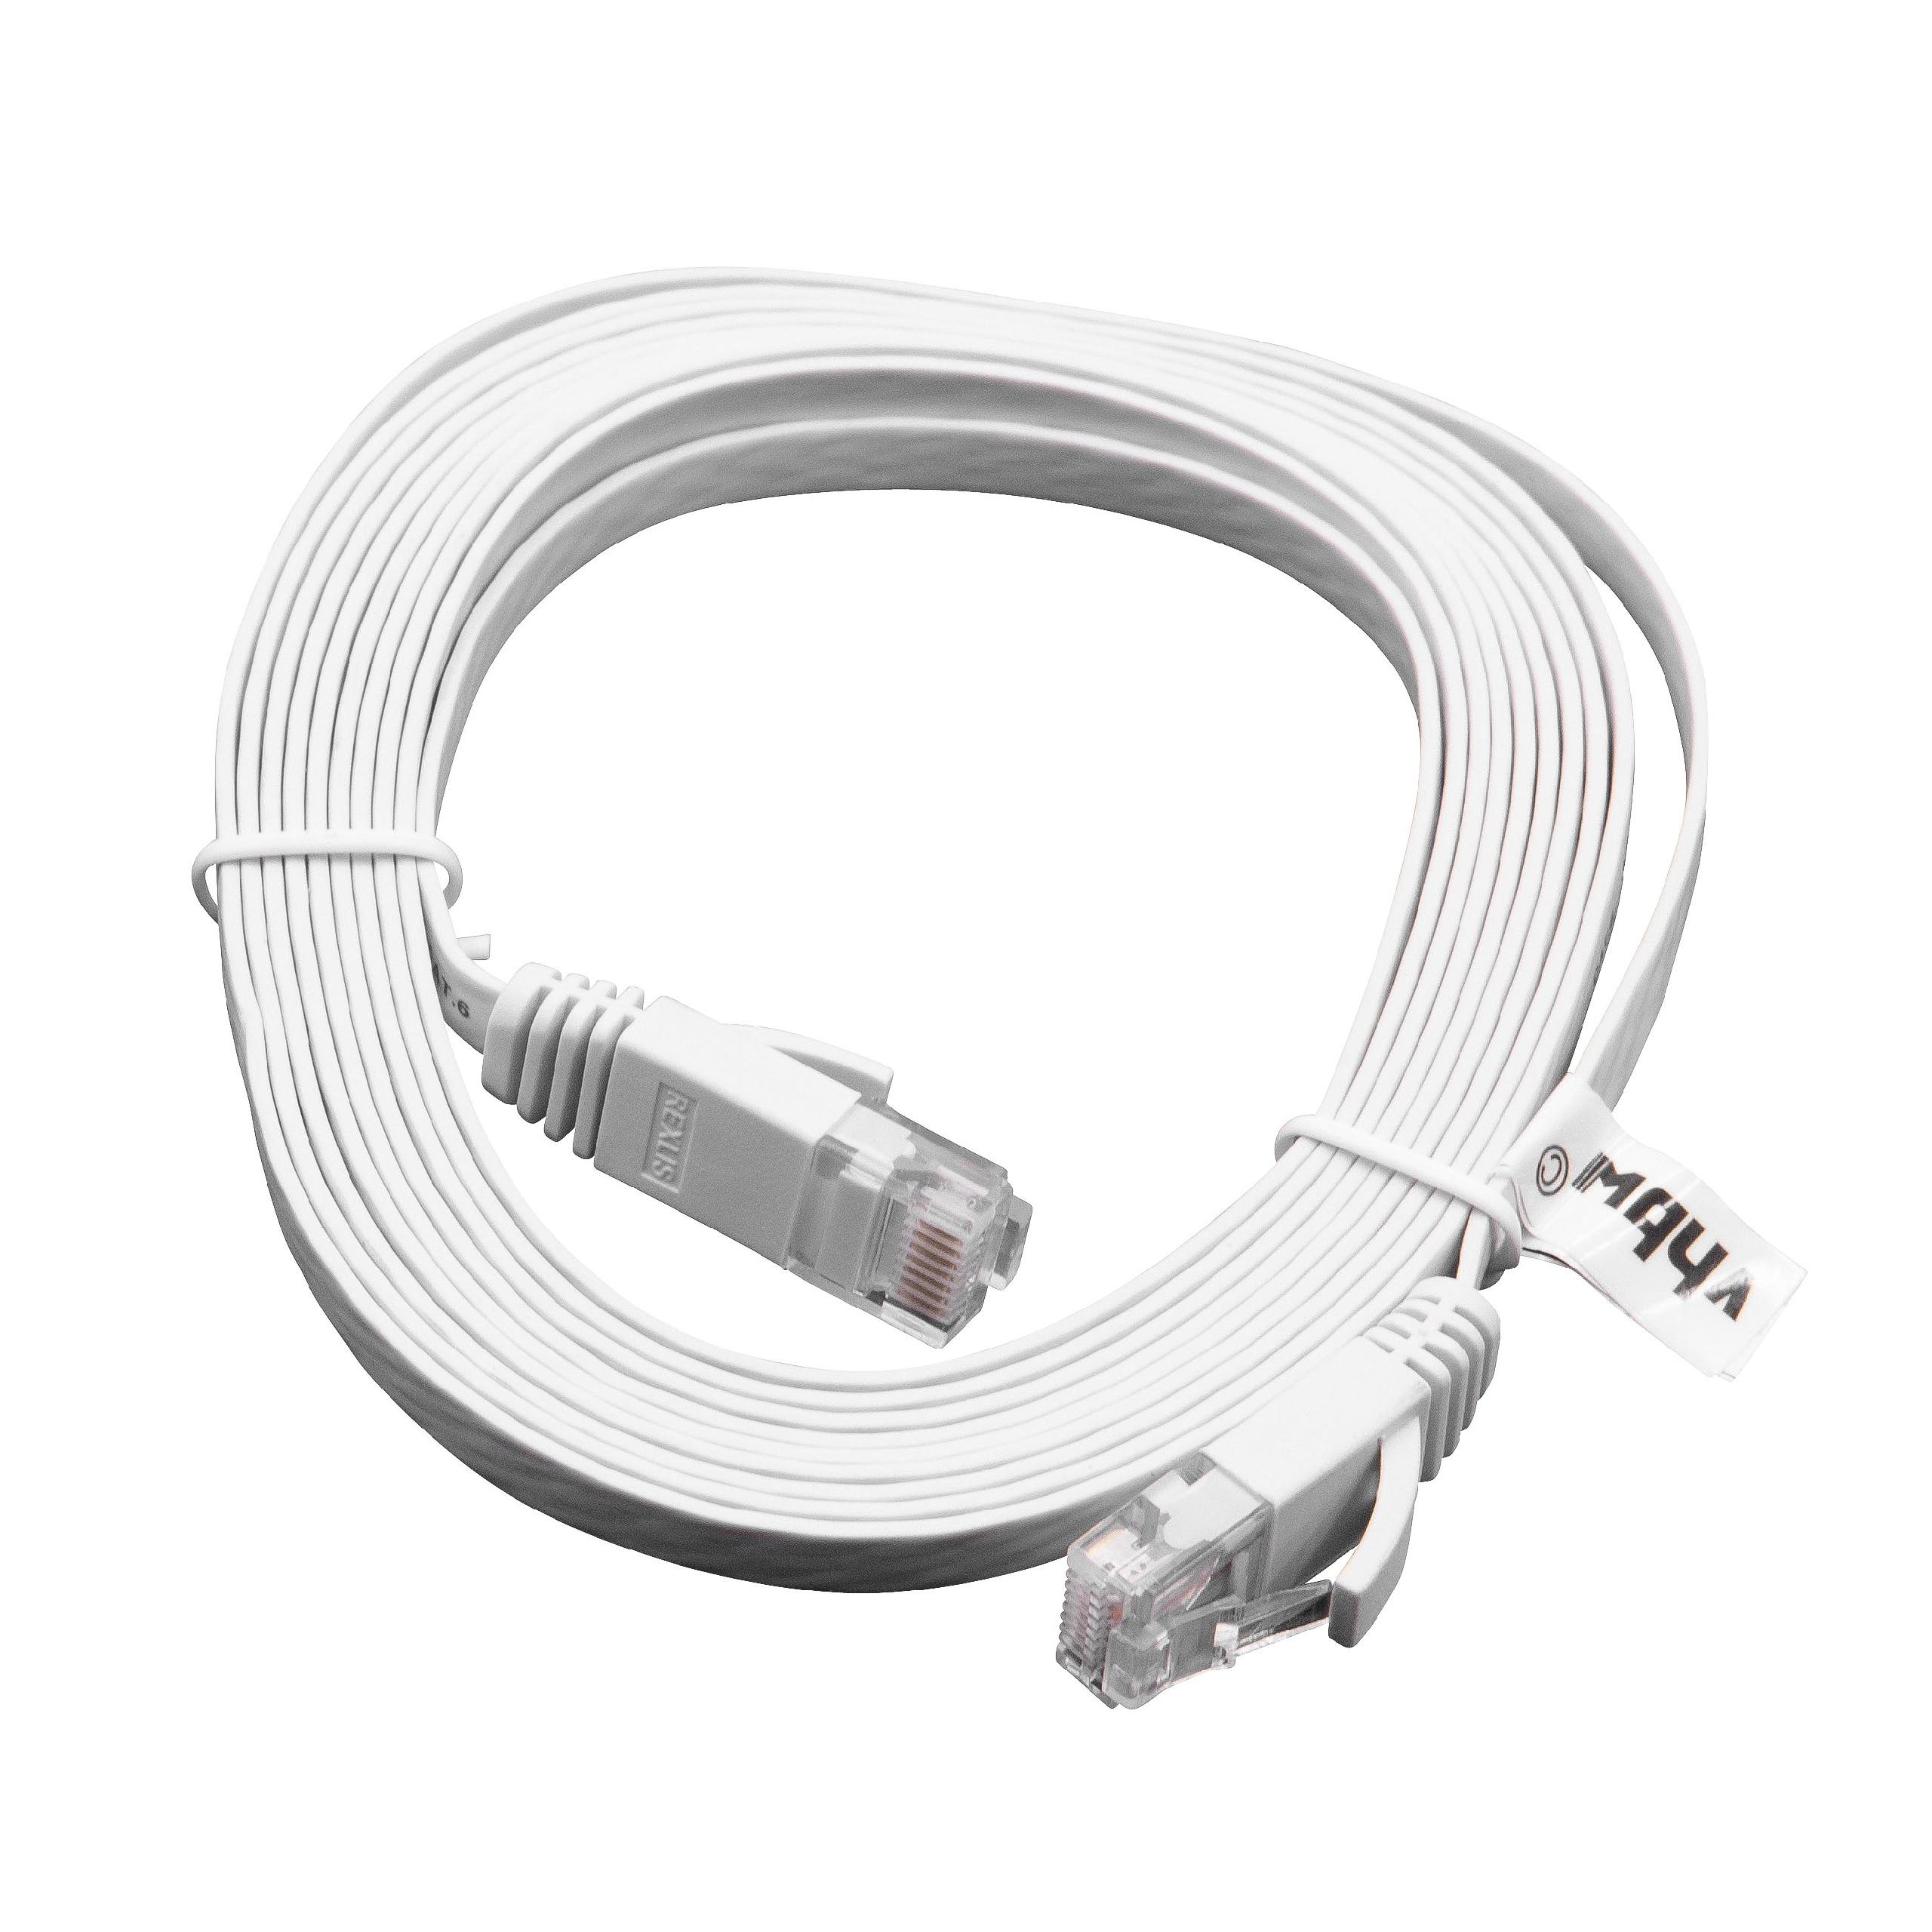 Cable de red de Ethernet, LAN, cable patch Cat6 3m blanco cable plano de tendido